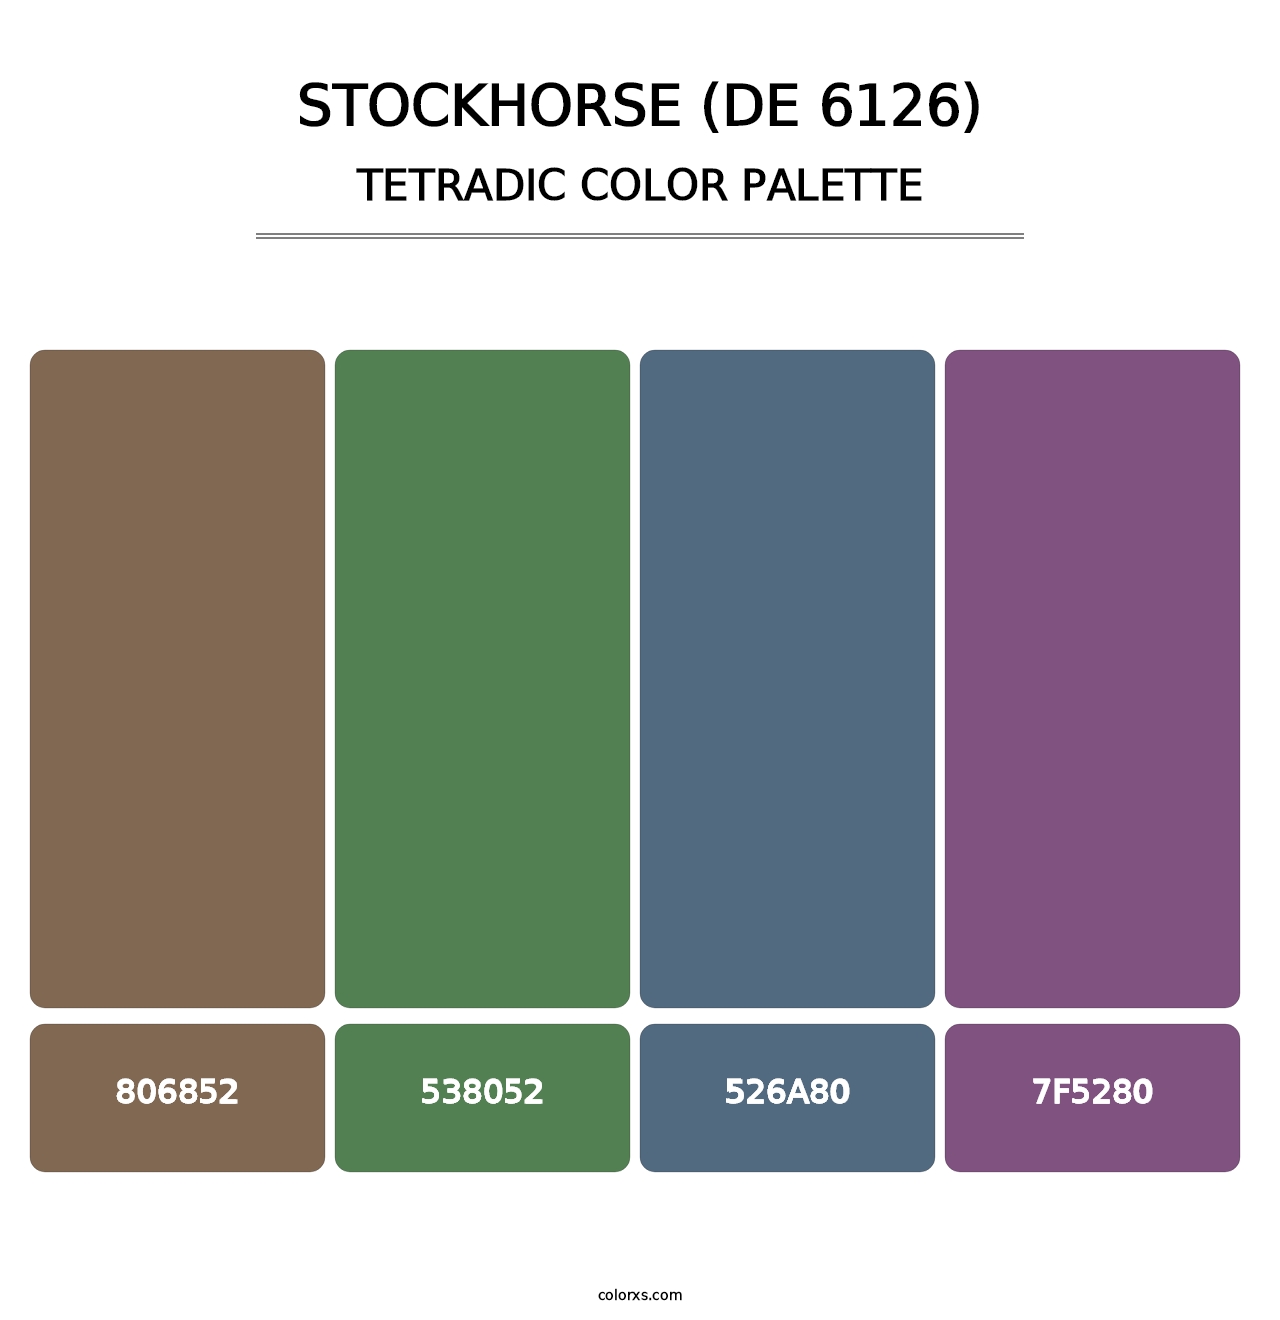 Stockhorse (DE 6126) - Tetradic Color Palette